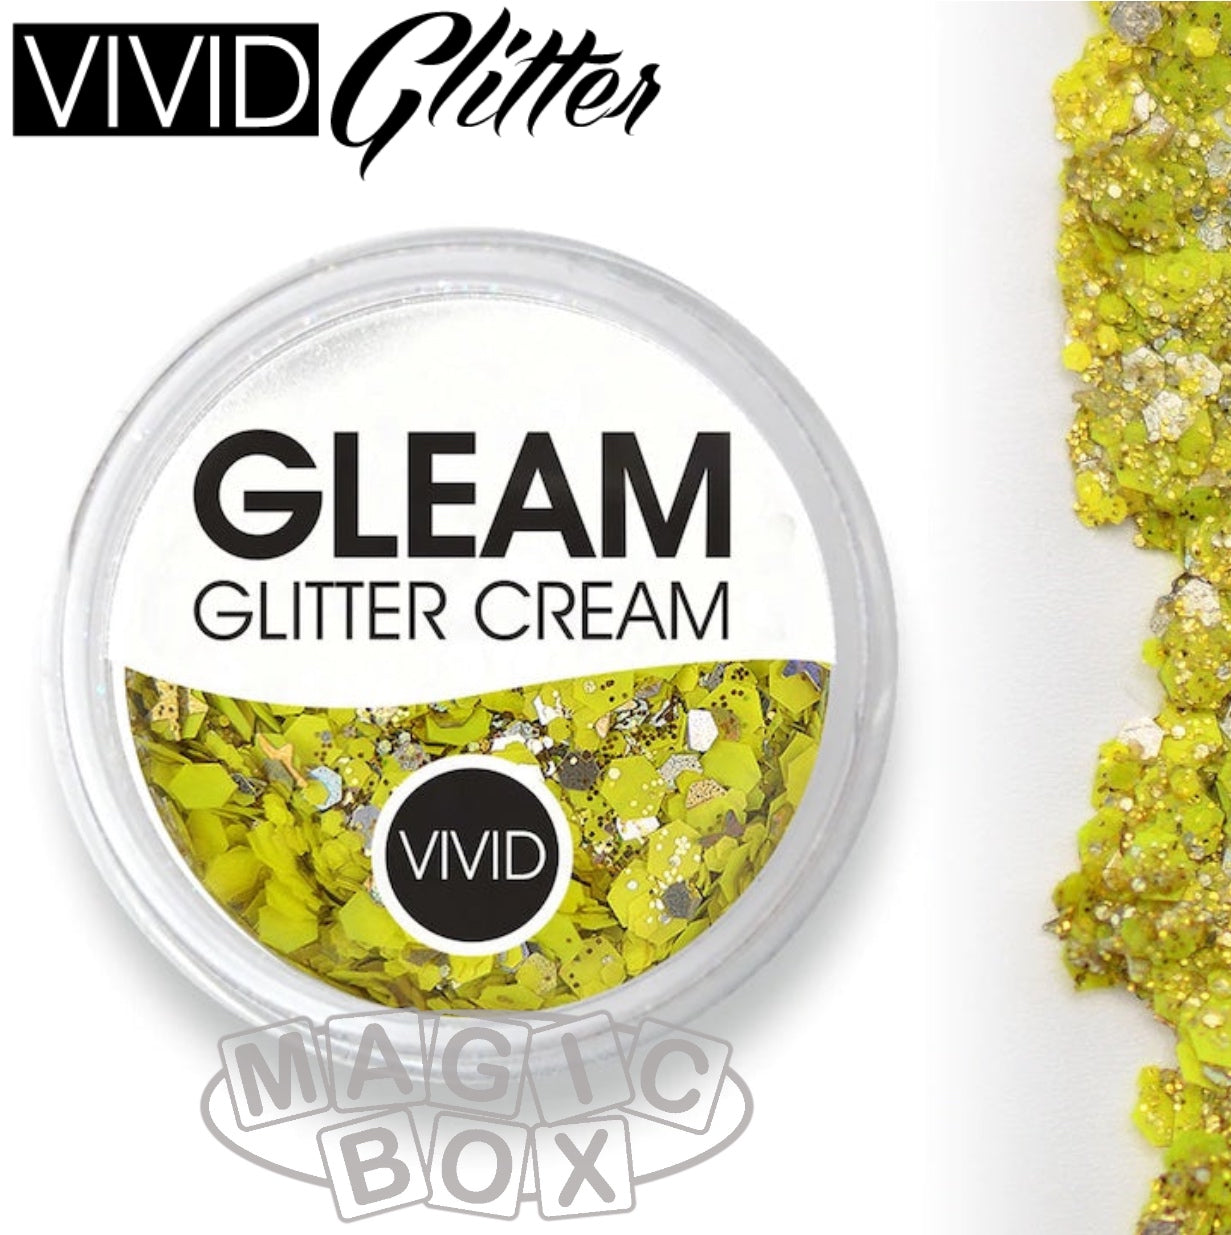 Vivid, Gleam Glitter Cream 10g, Pineapple